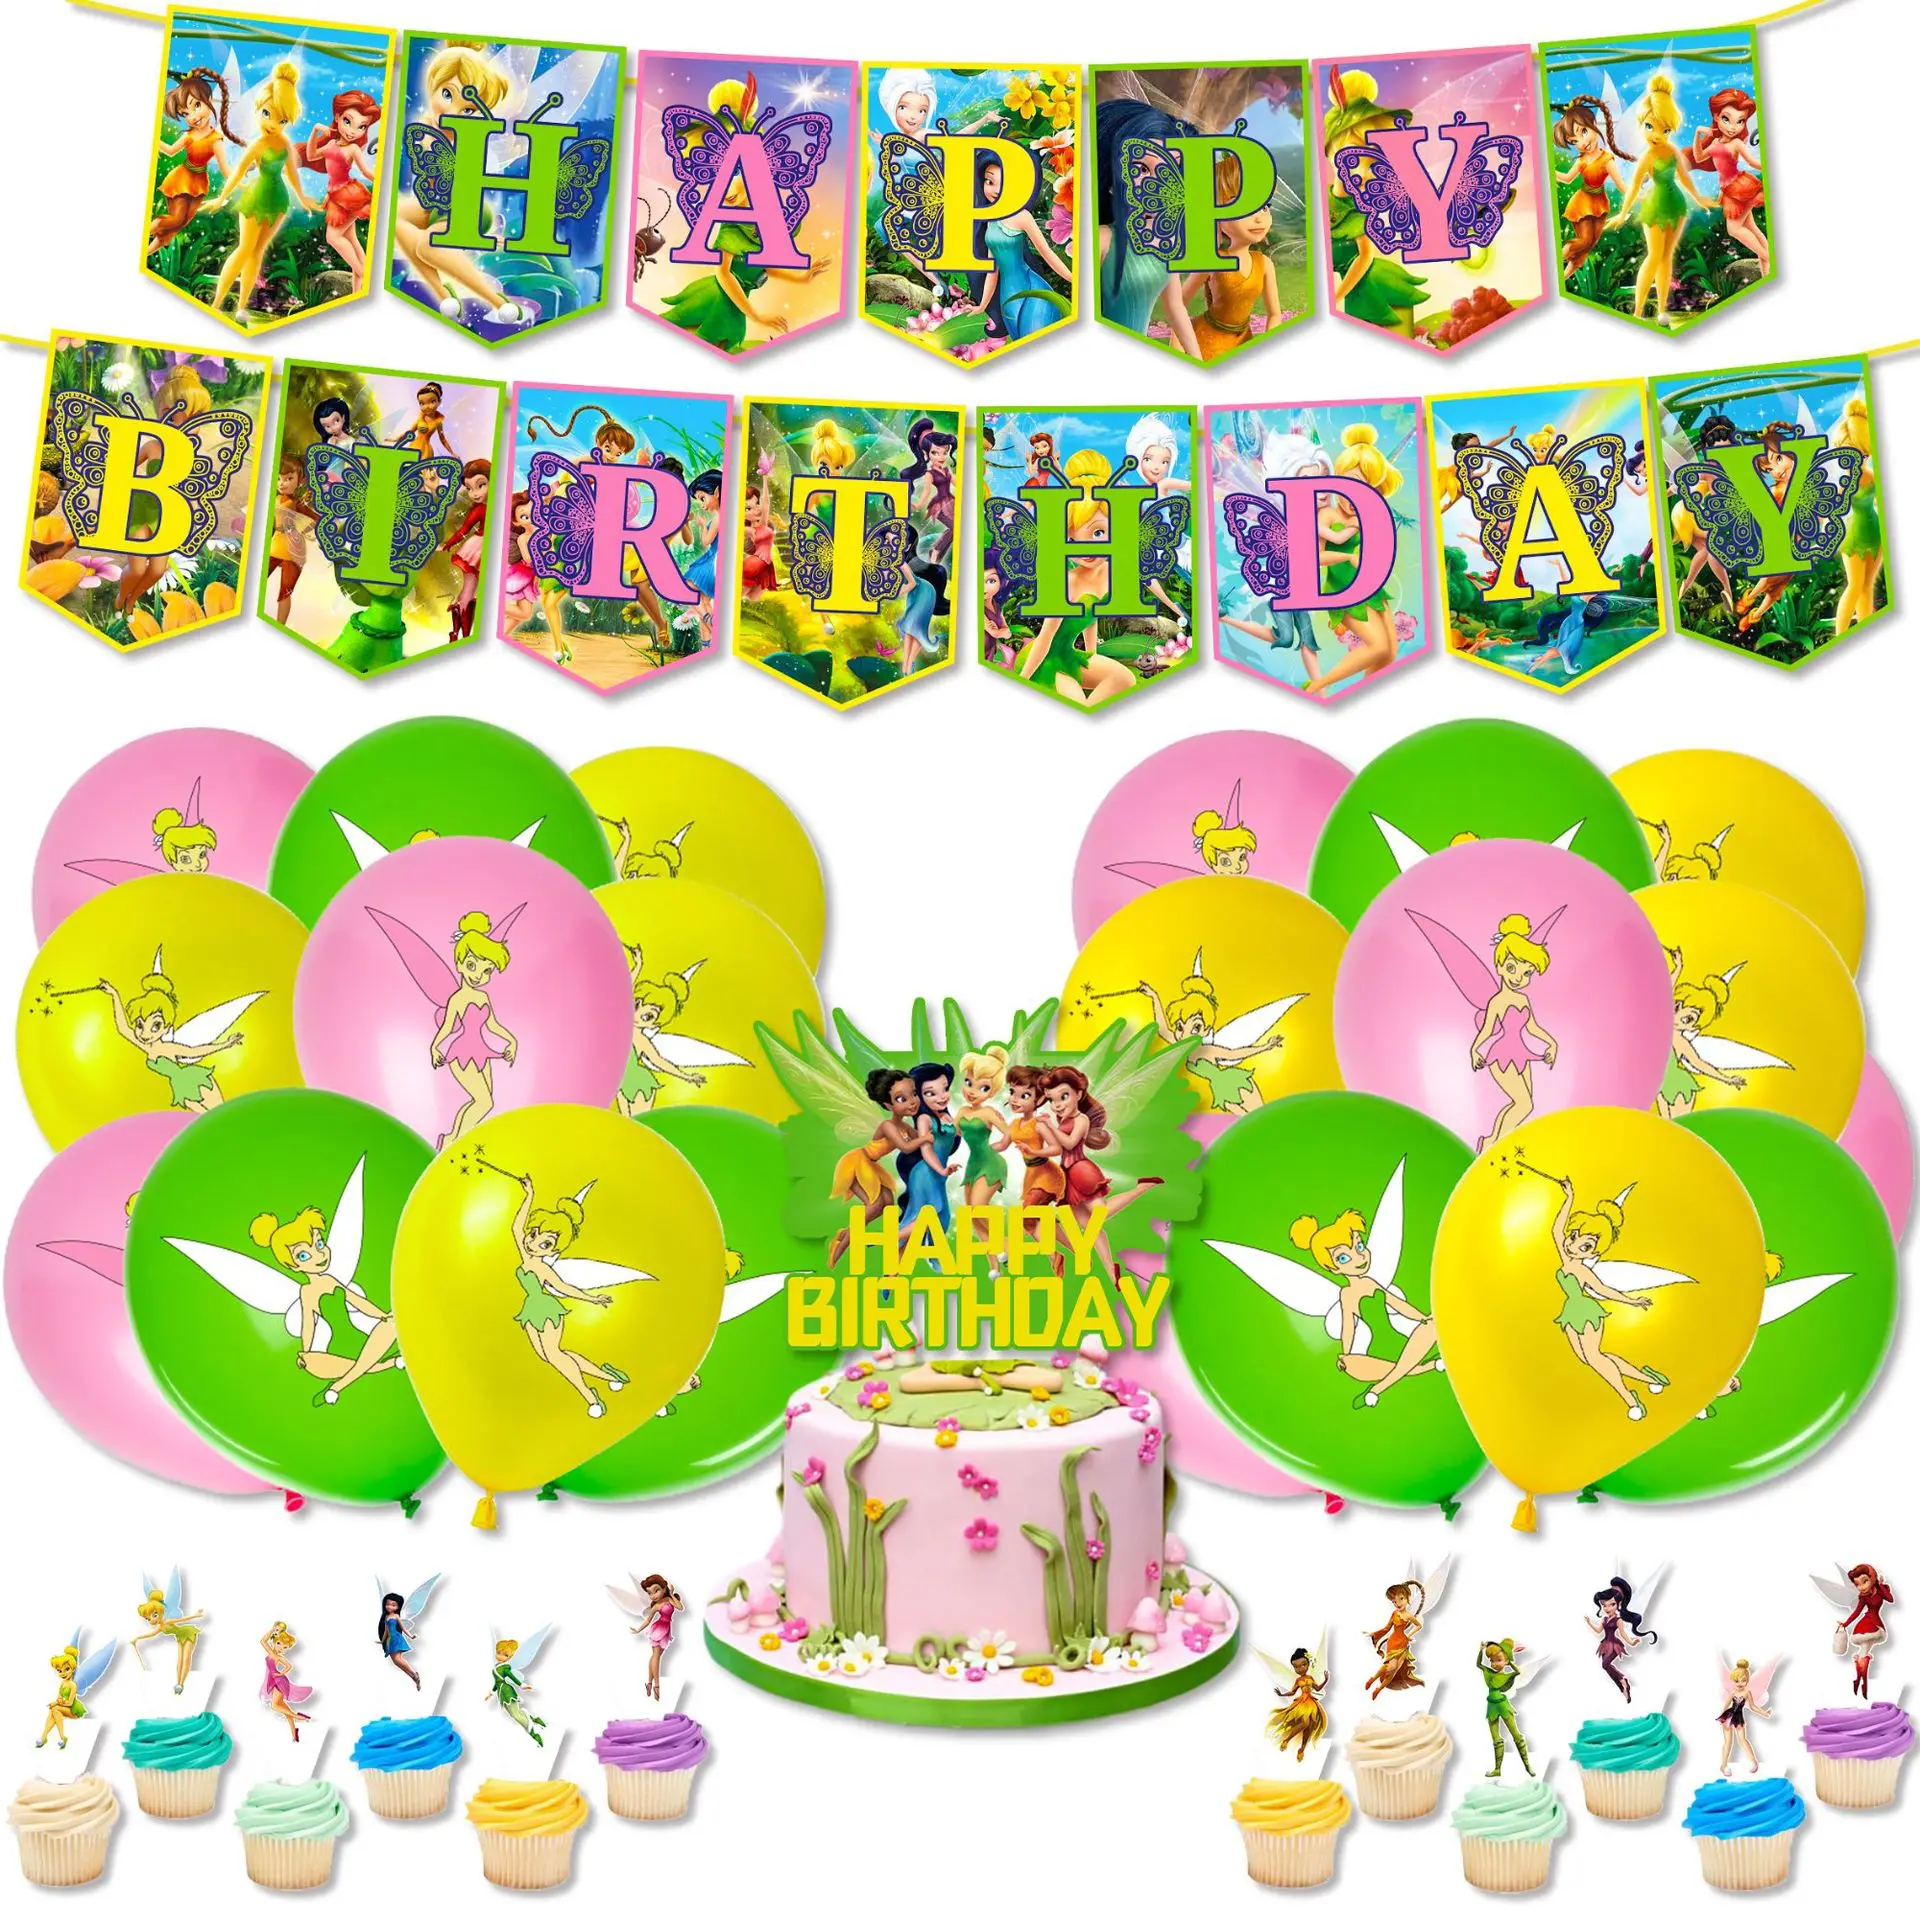 

Disney Princess Tinkerbell Tinker Bell Faery Fairy Elf Flower Elves Balloon Banner Cake Topper Birthday Party Decor Kids Toys